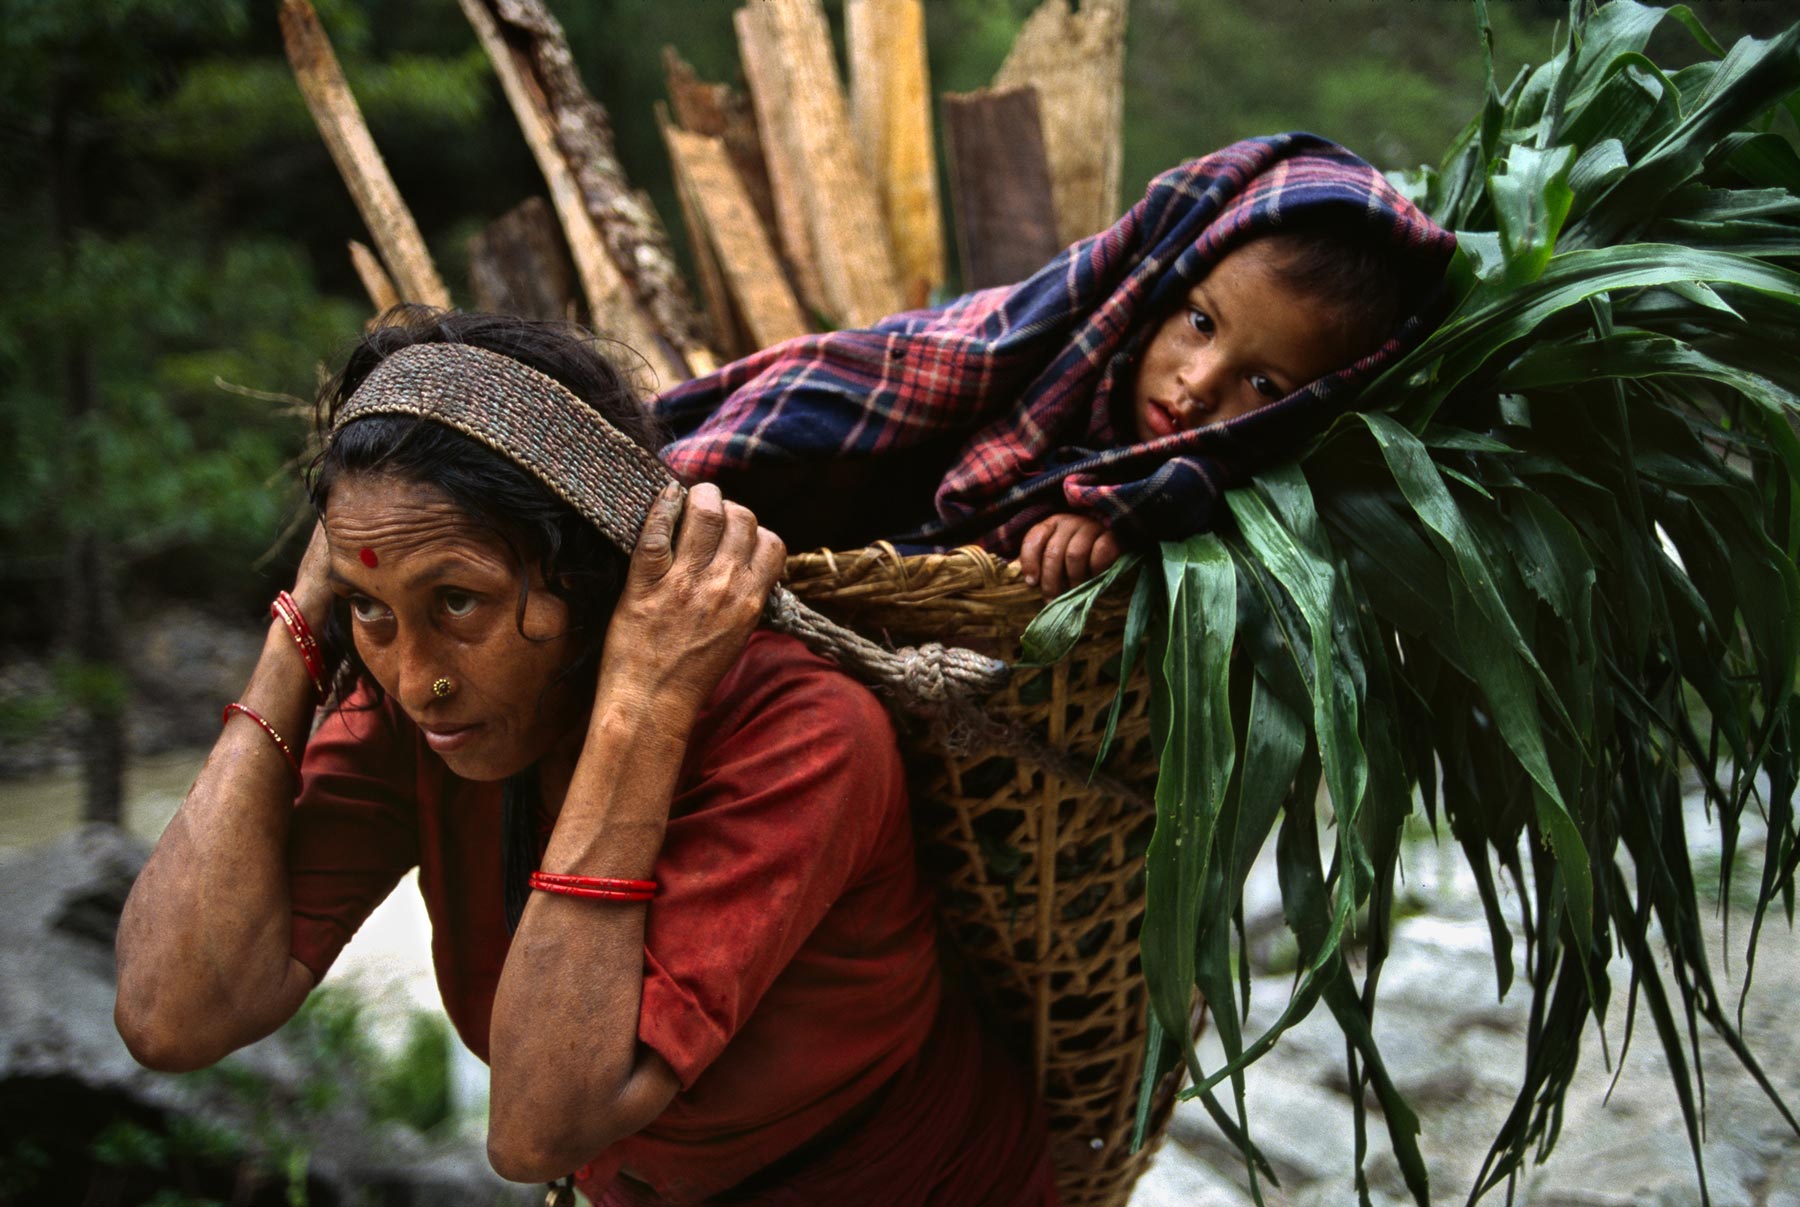  地球上的孩子，尼泊尔。来自摄影师Steve McCurry。 